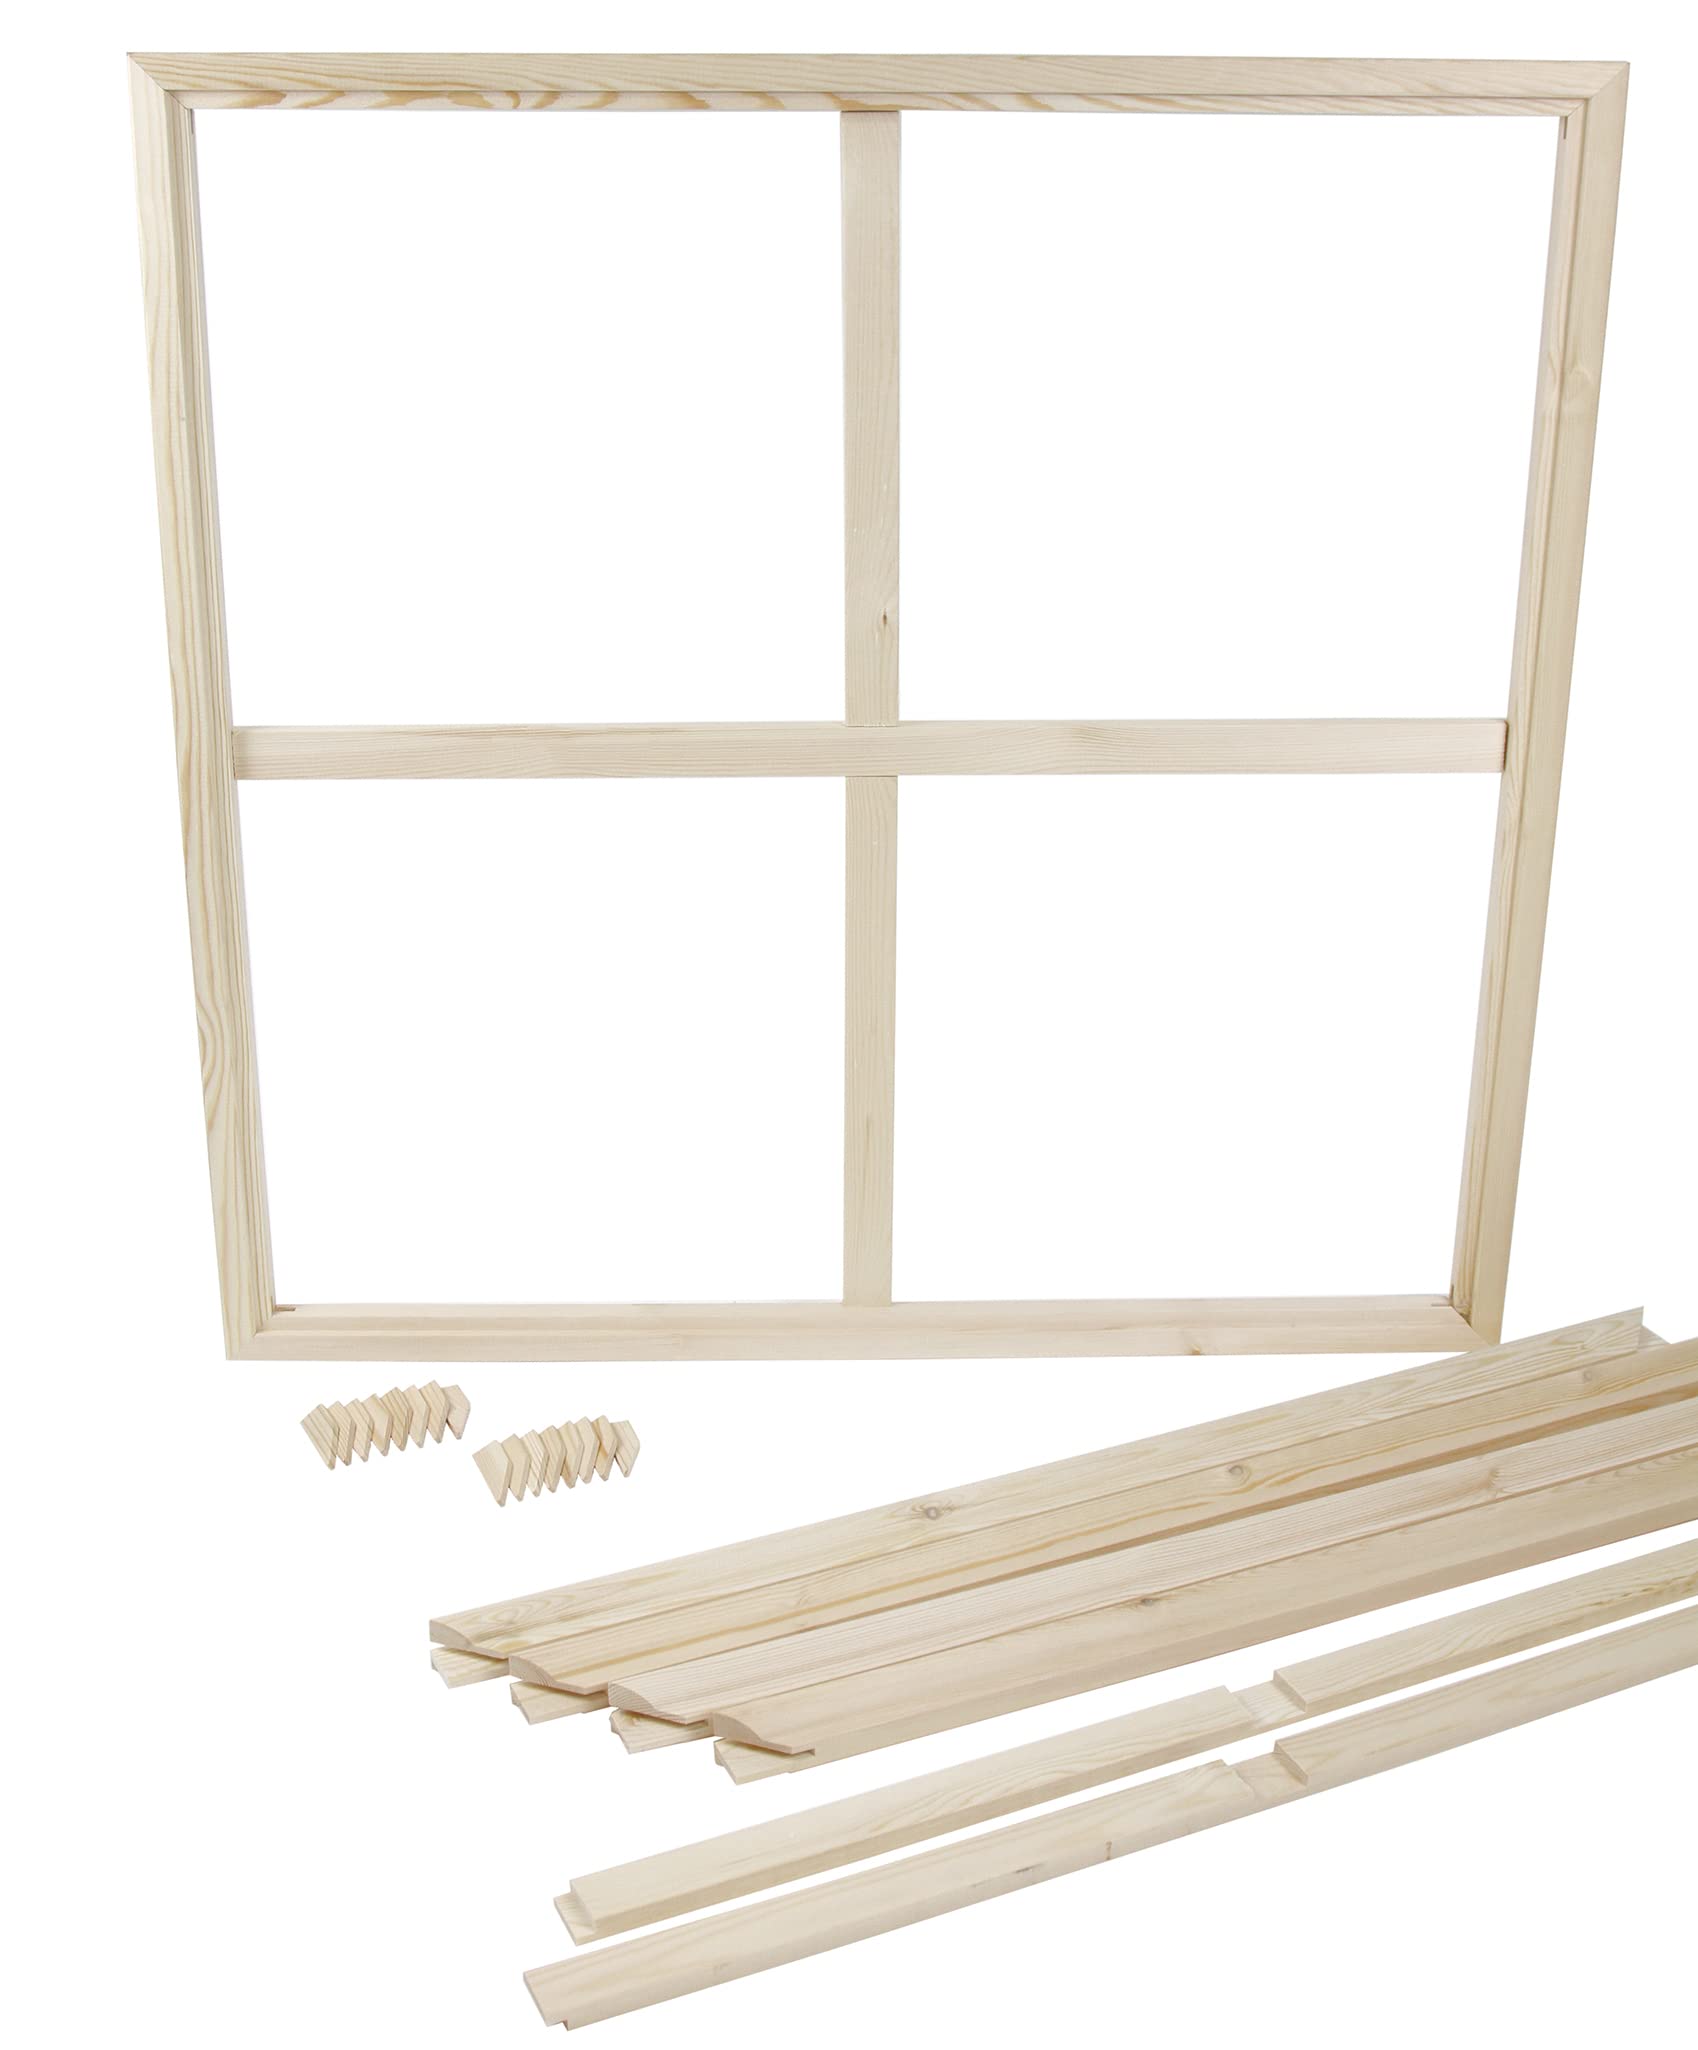 Keilrahmenleisten-Set - 2x 90x140 cm zum Selberbauen, Keilrahmen Bausatz für Leinwand im Doppel-Set mit Keilen und Streben